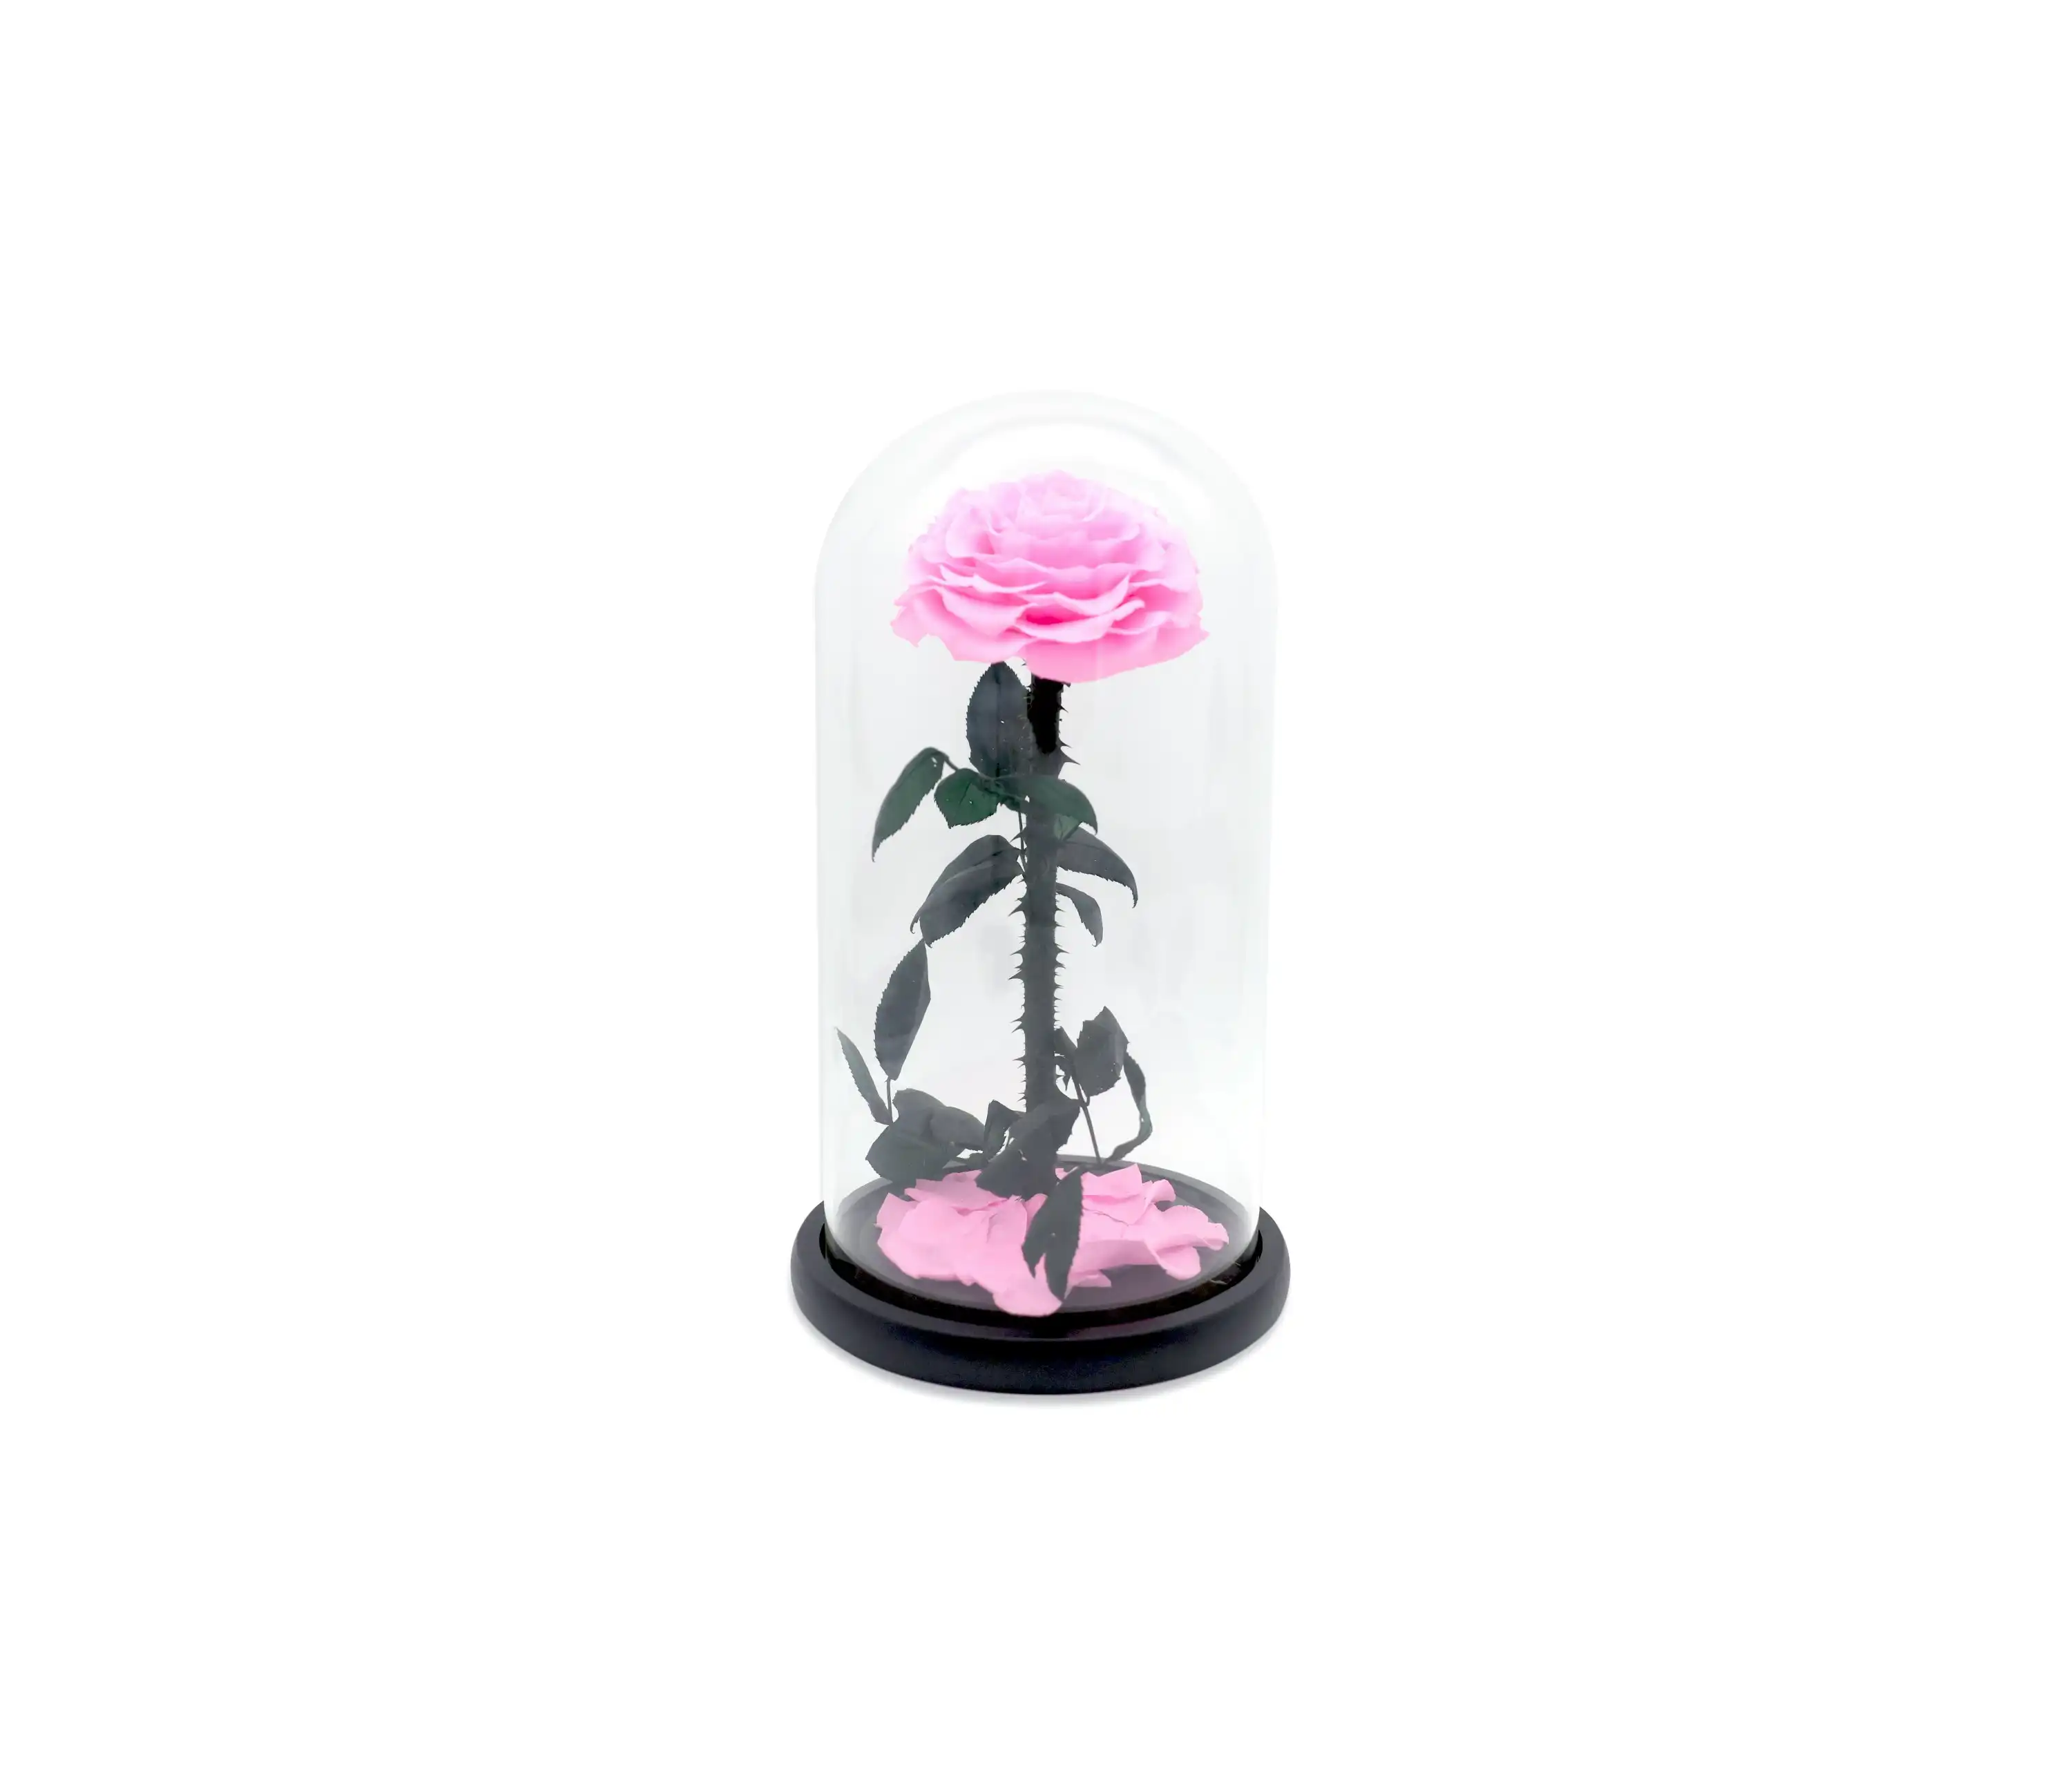 Vistara Timeless Rose - Natural 30cm Pink Preserved Rose